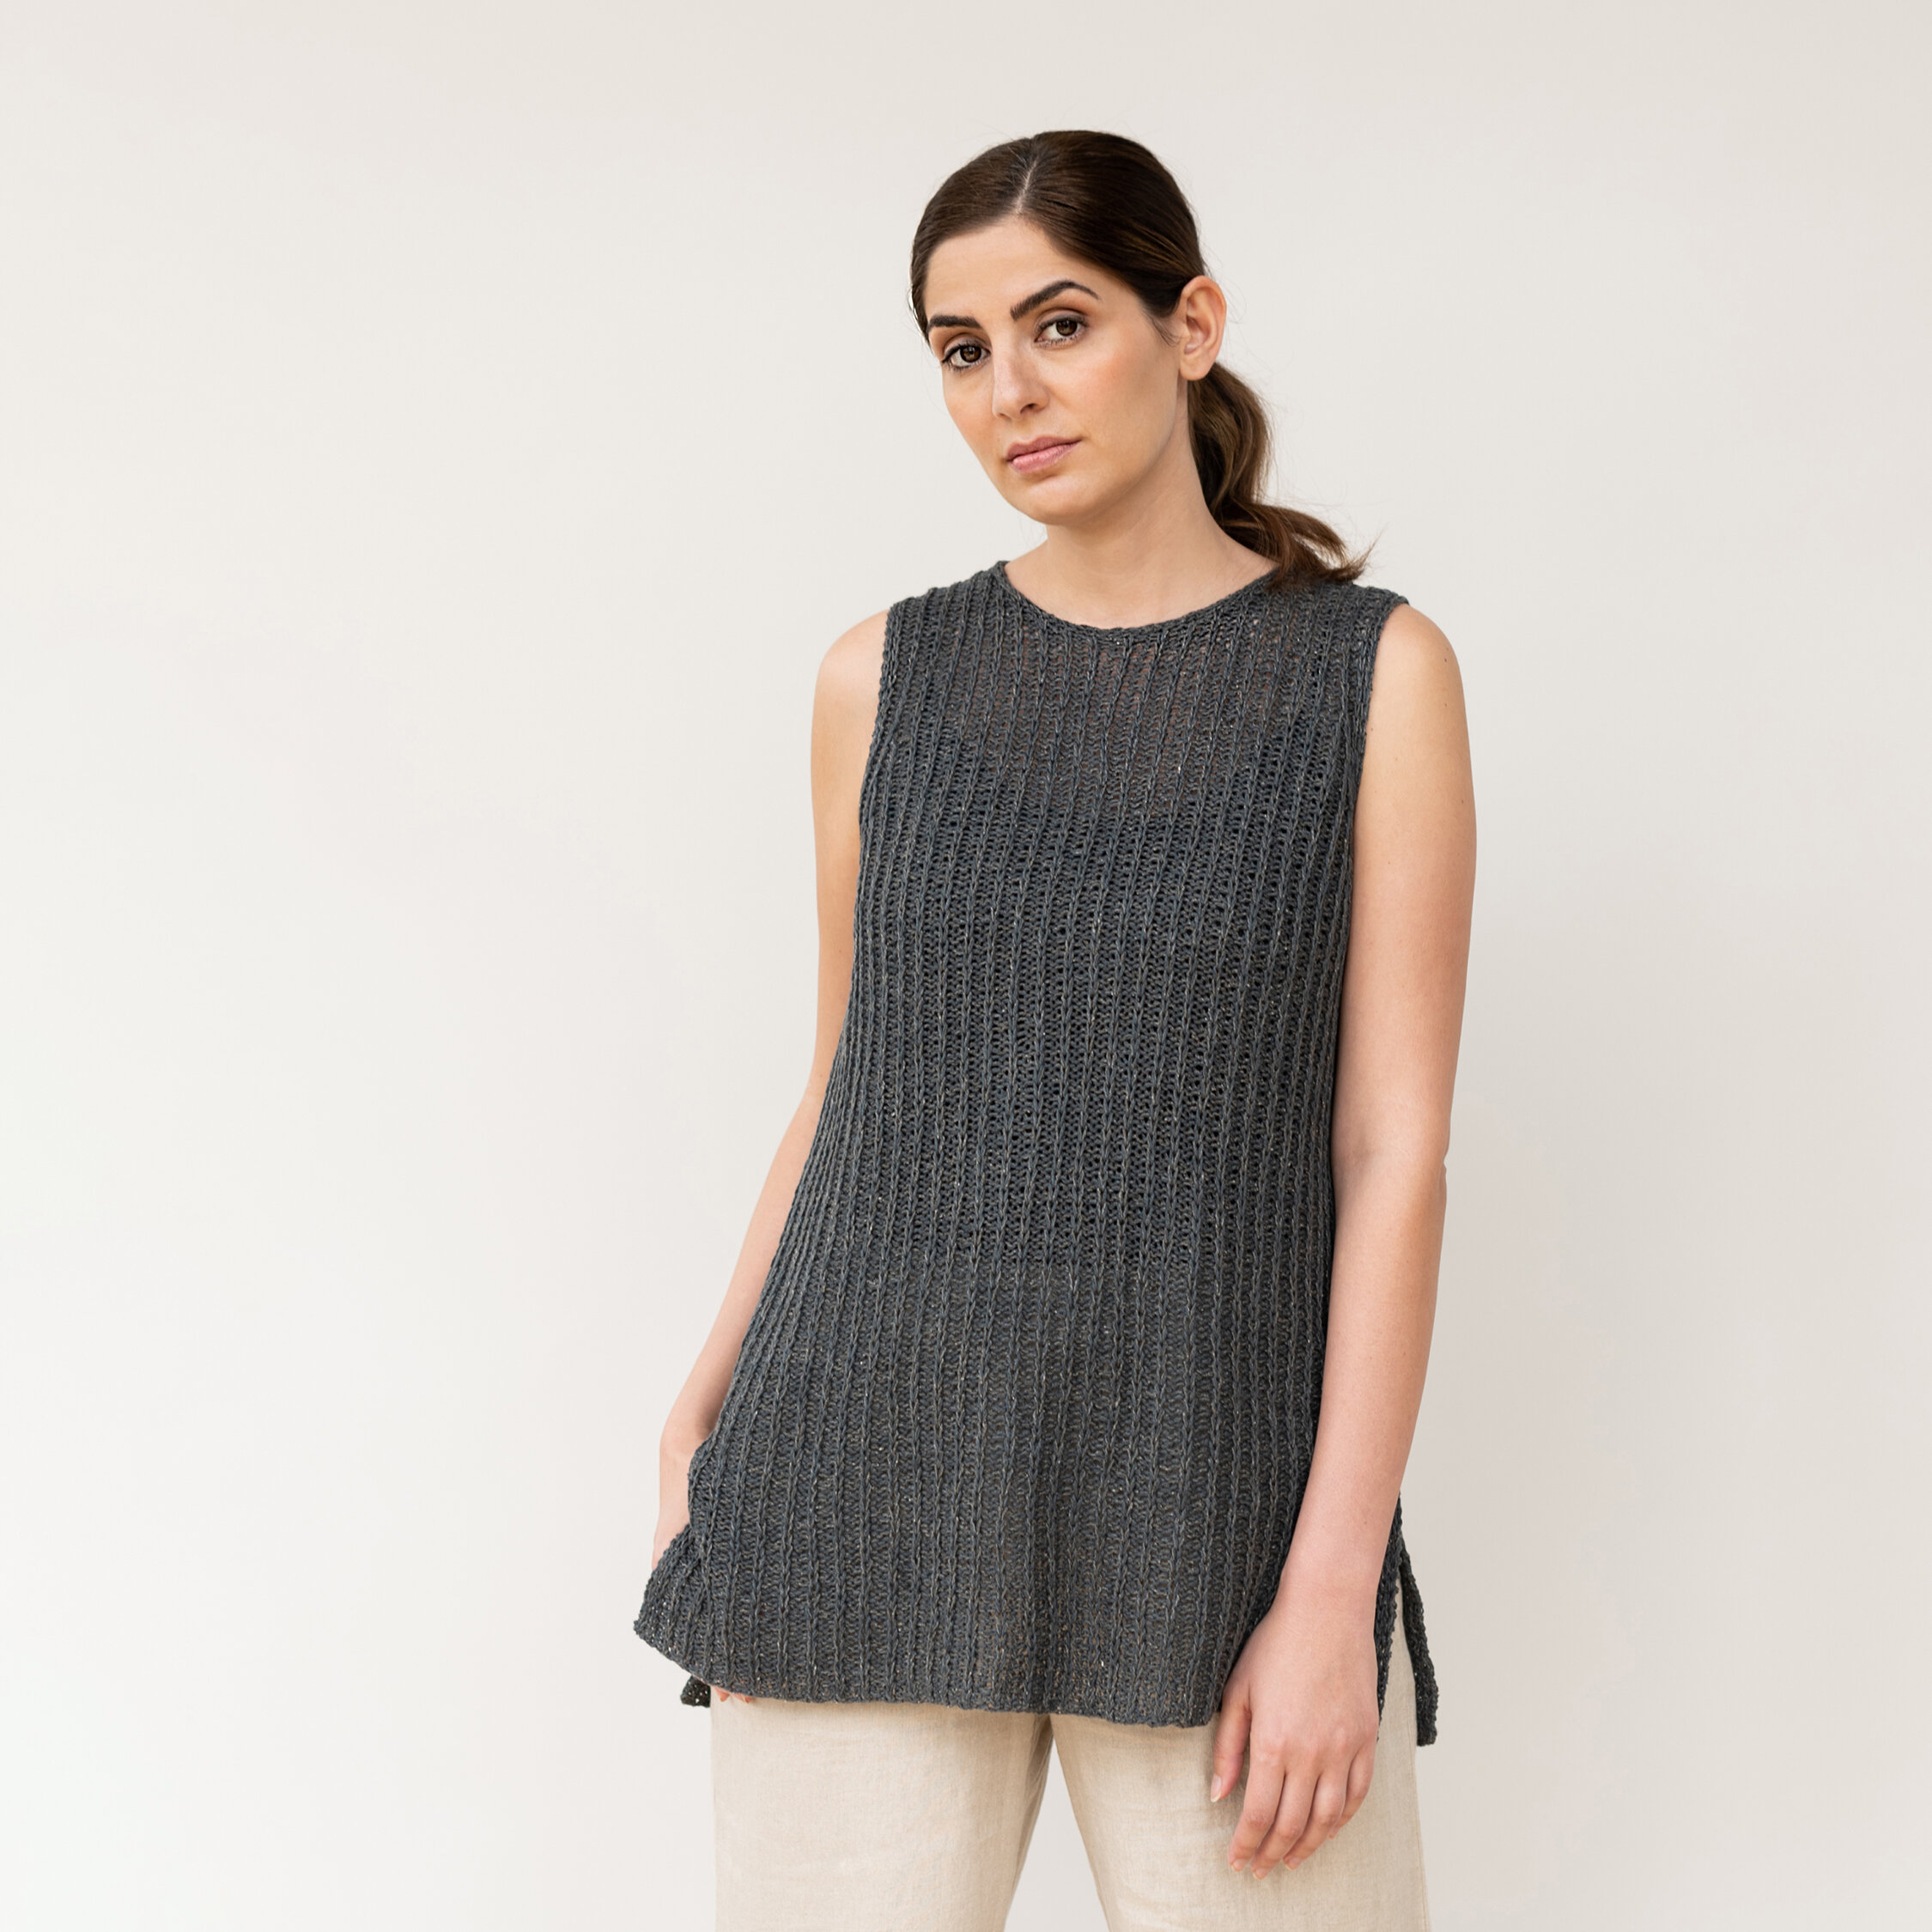 Dafne knitting pattern by Julie Hoover — Julie Hoover